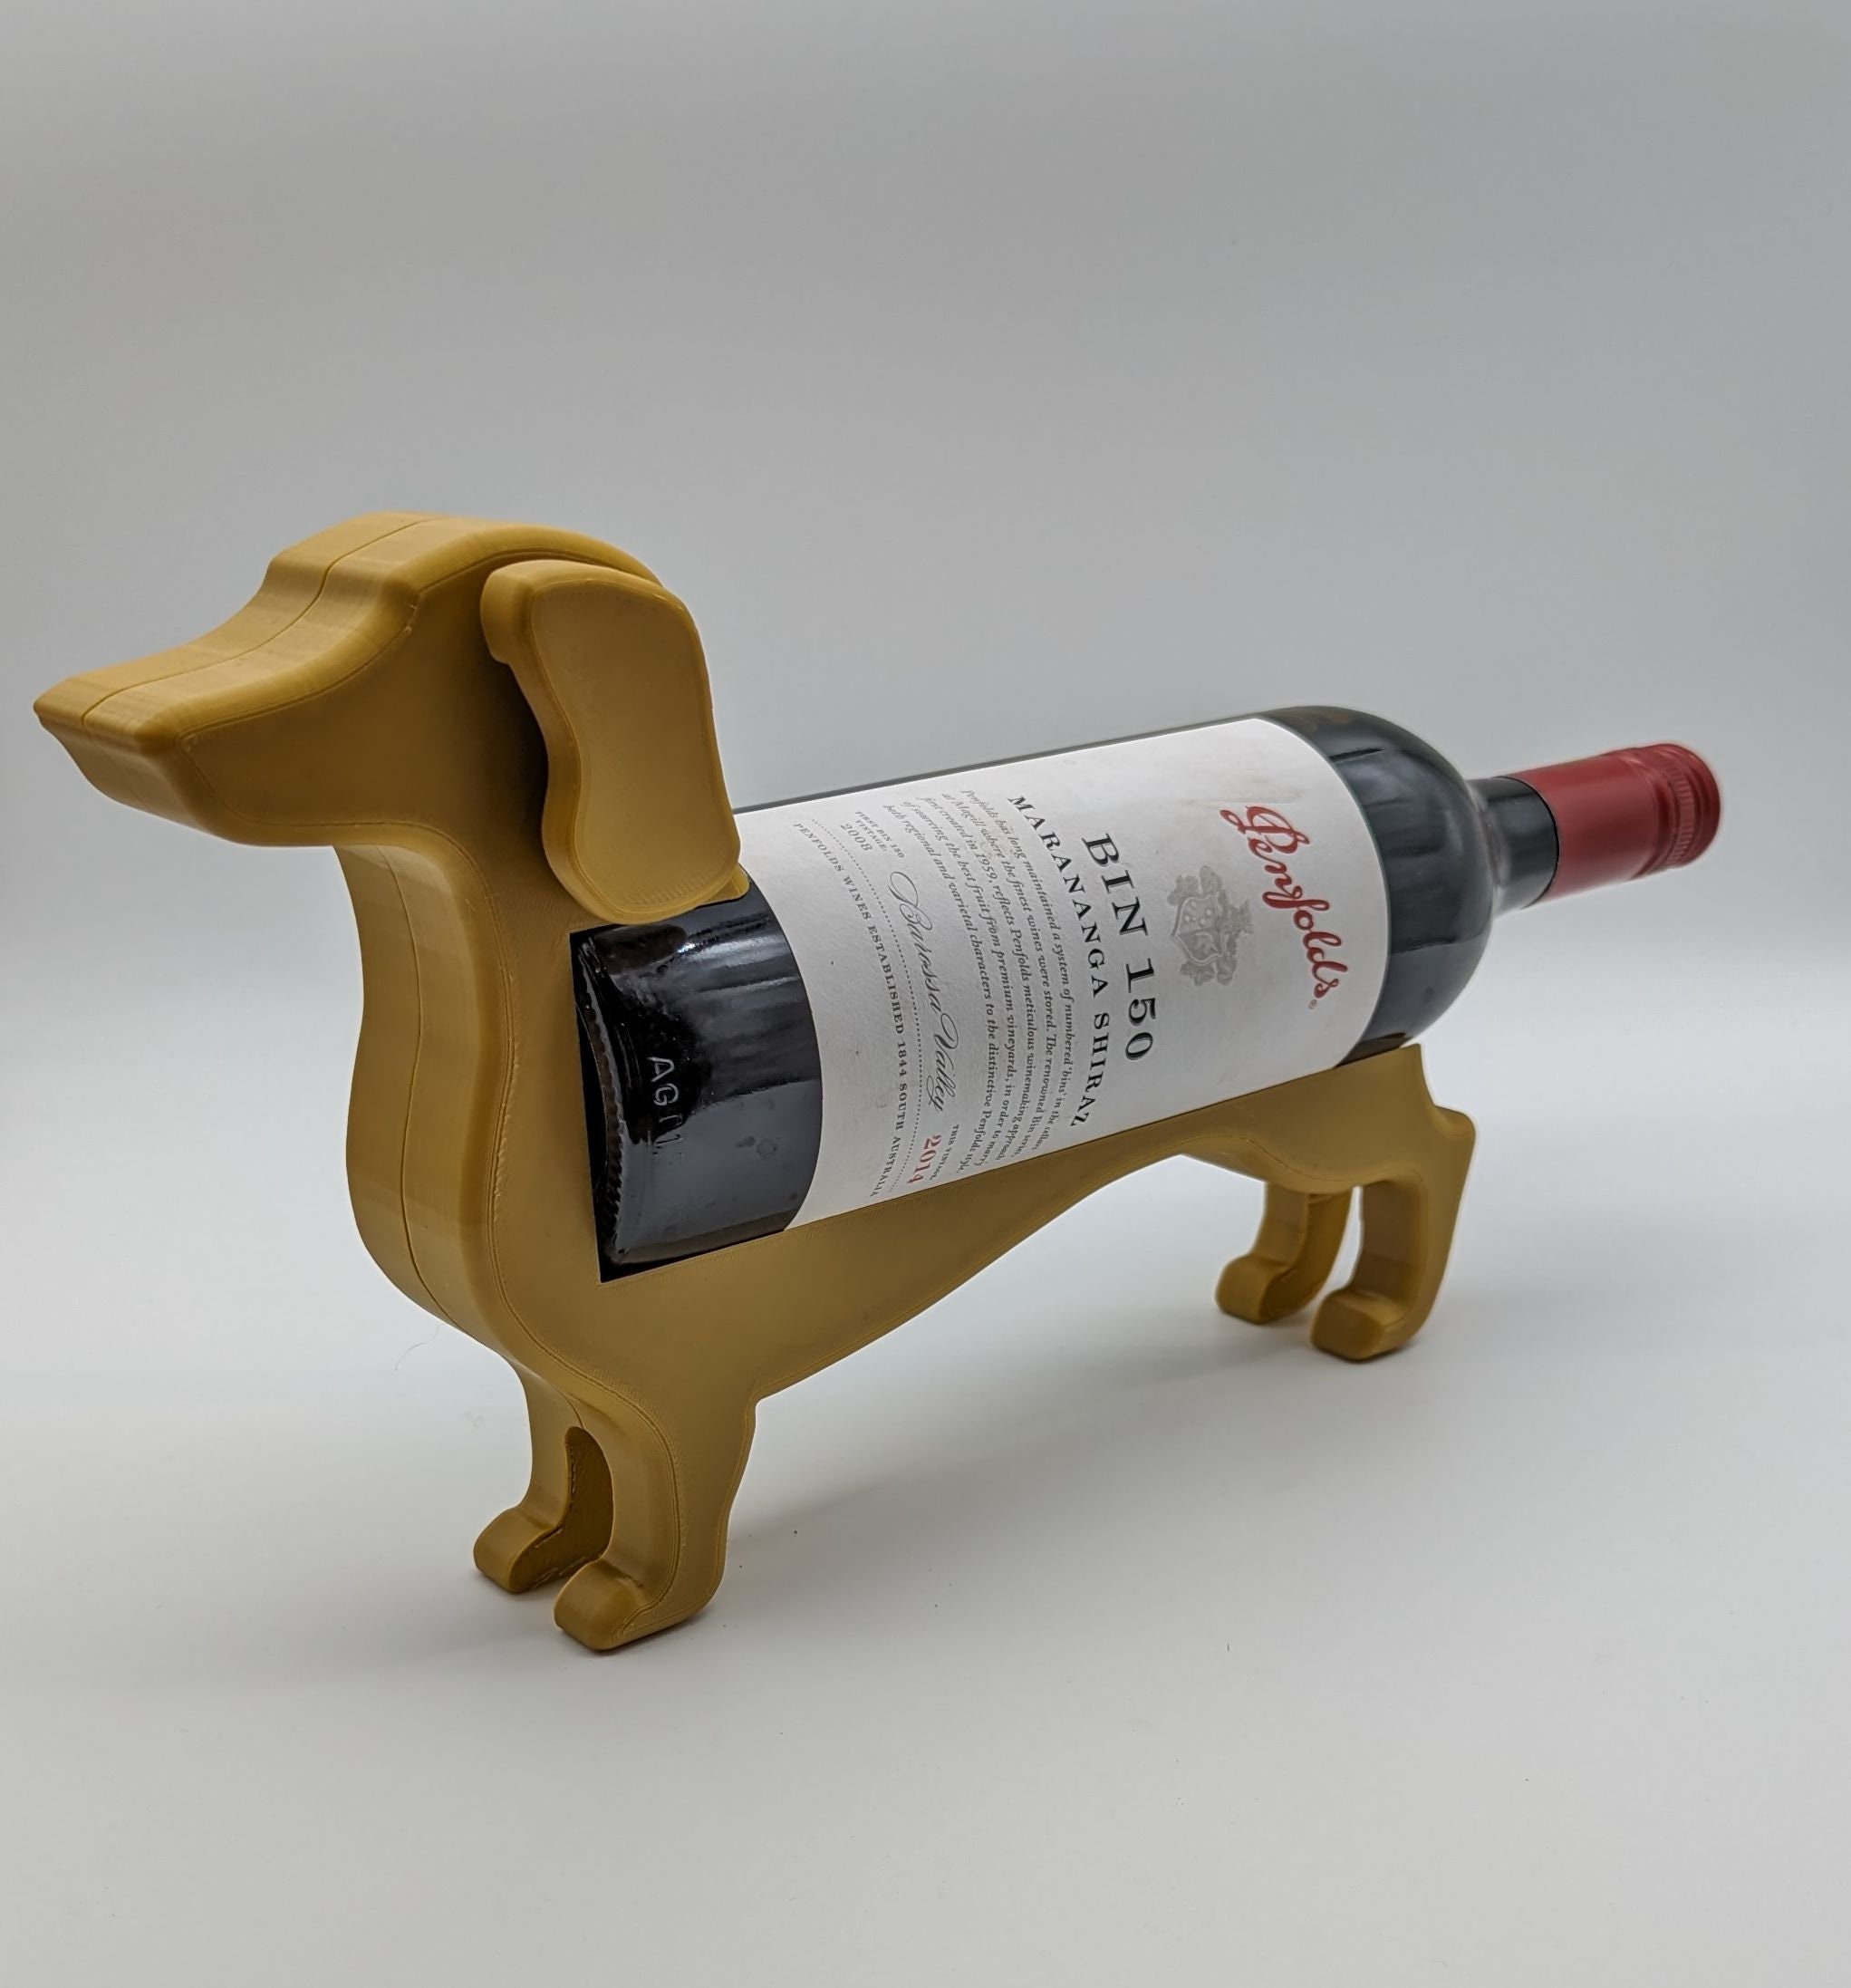 Wine Chiller/Utensil Holder (Wiener Dog Delight)